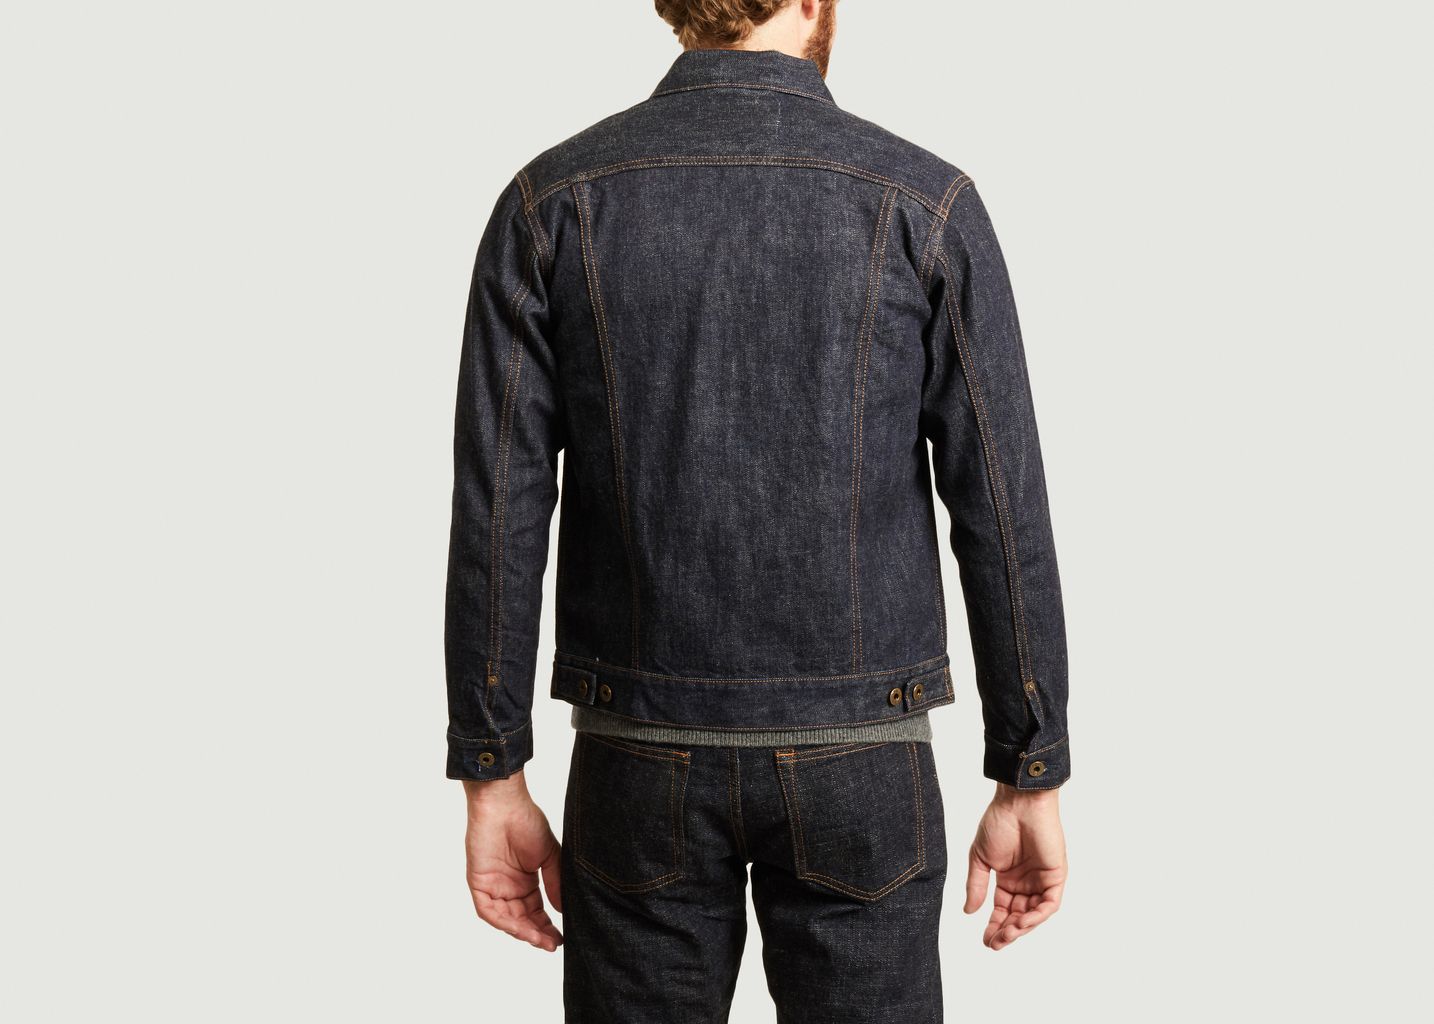 Vintage denim jacket - Japan Blue Jeans